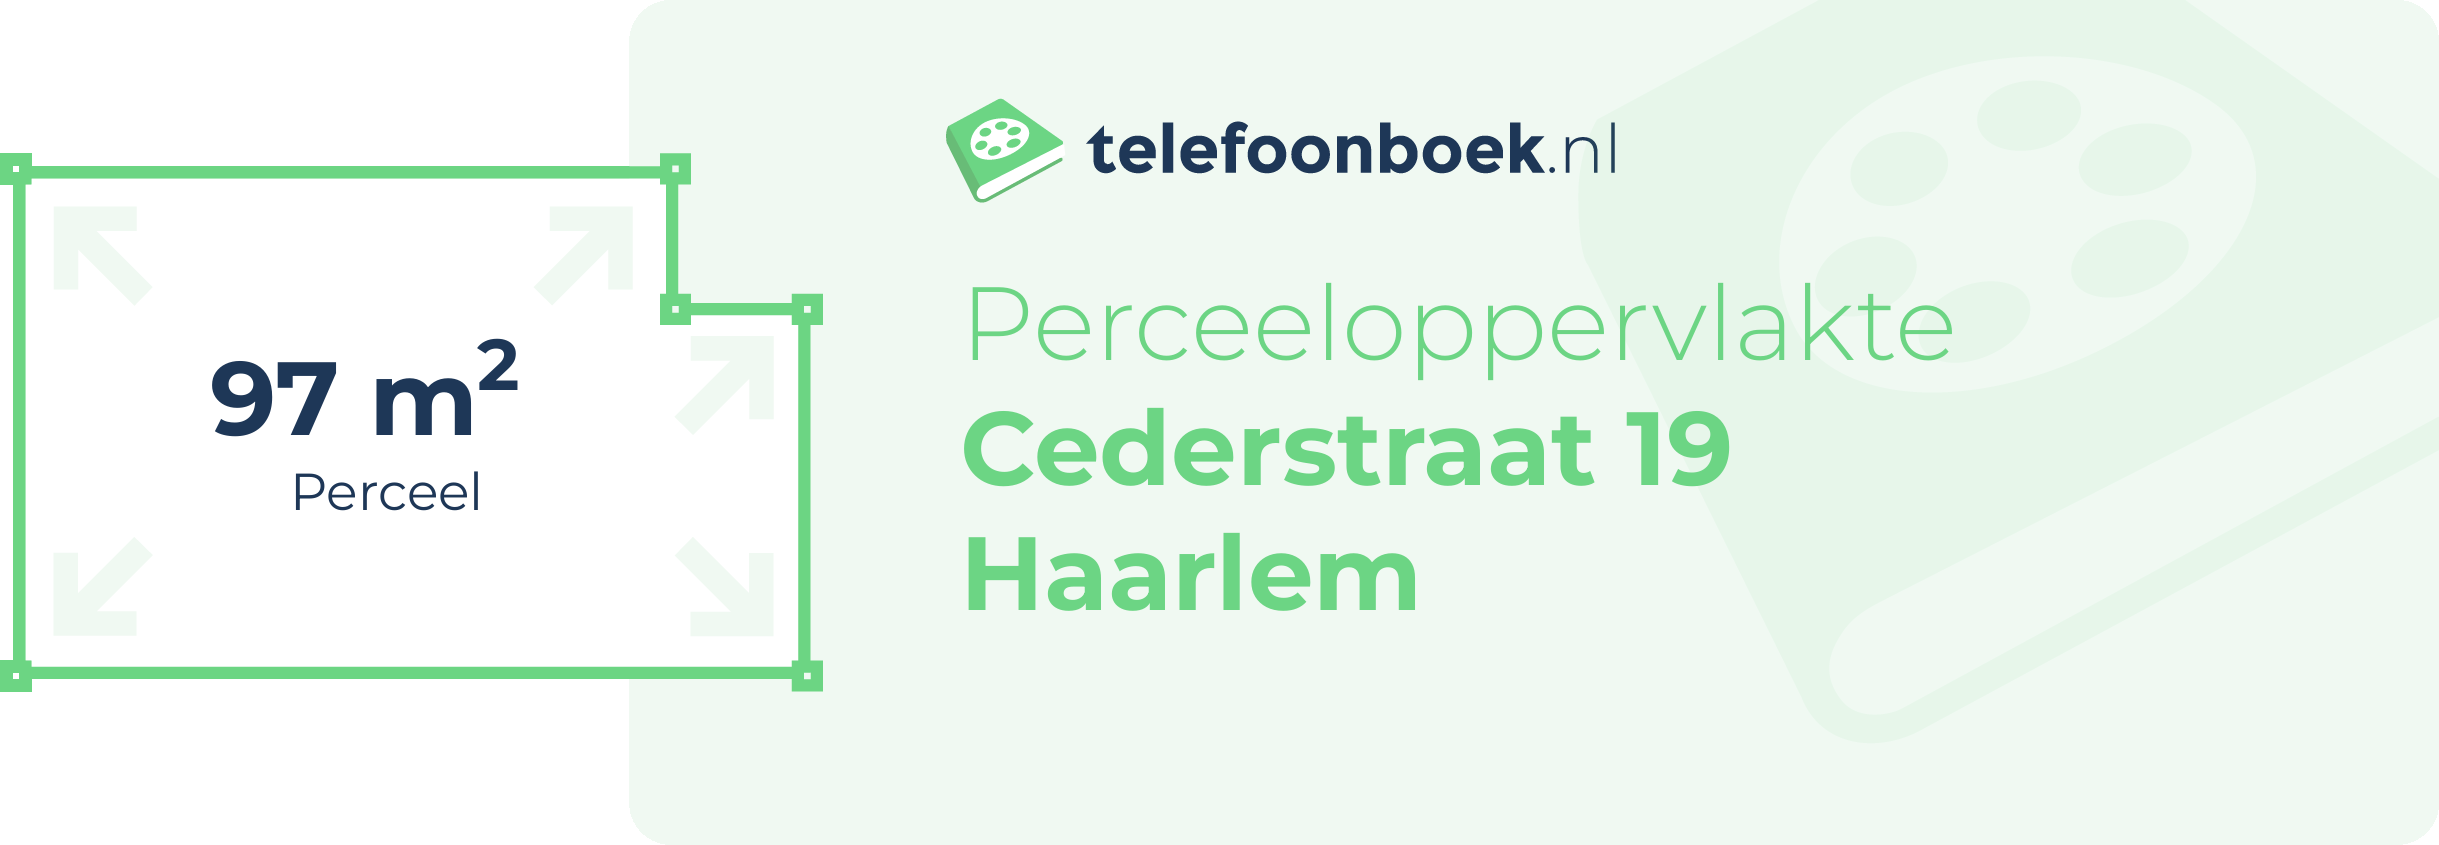 Perceeloppervlakte Cederstraat 19 Haarlem